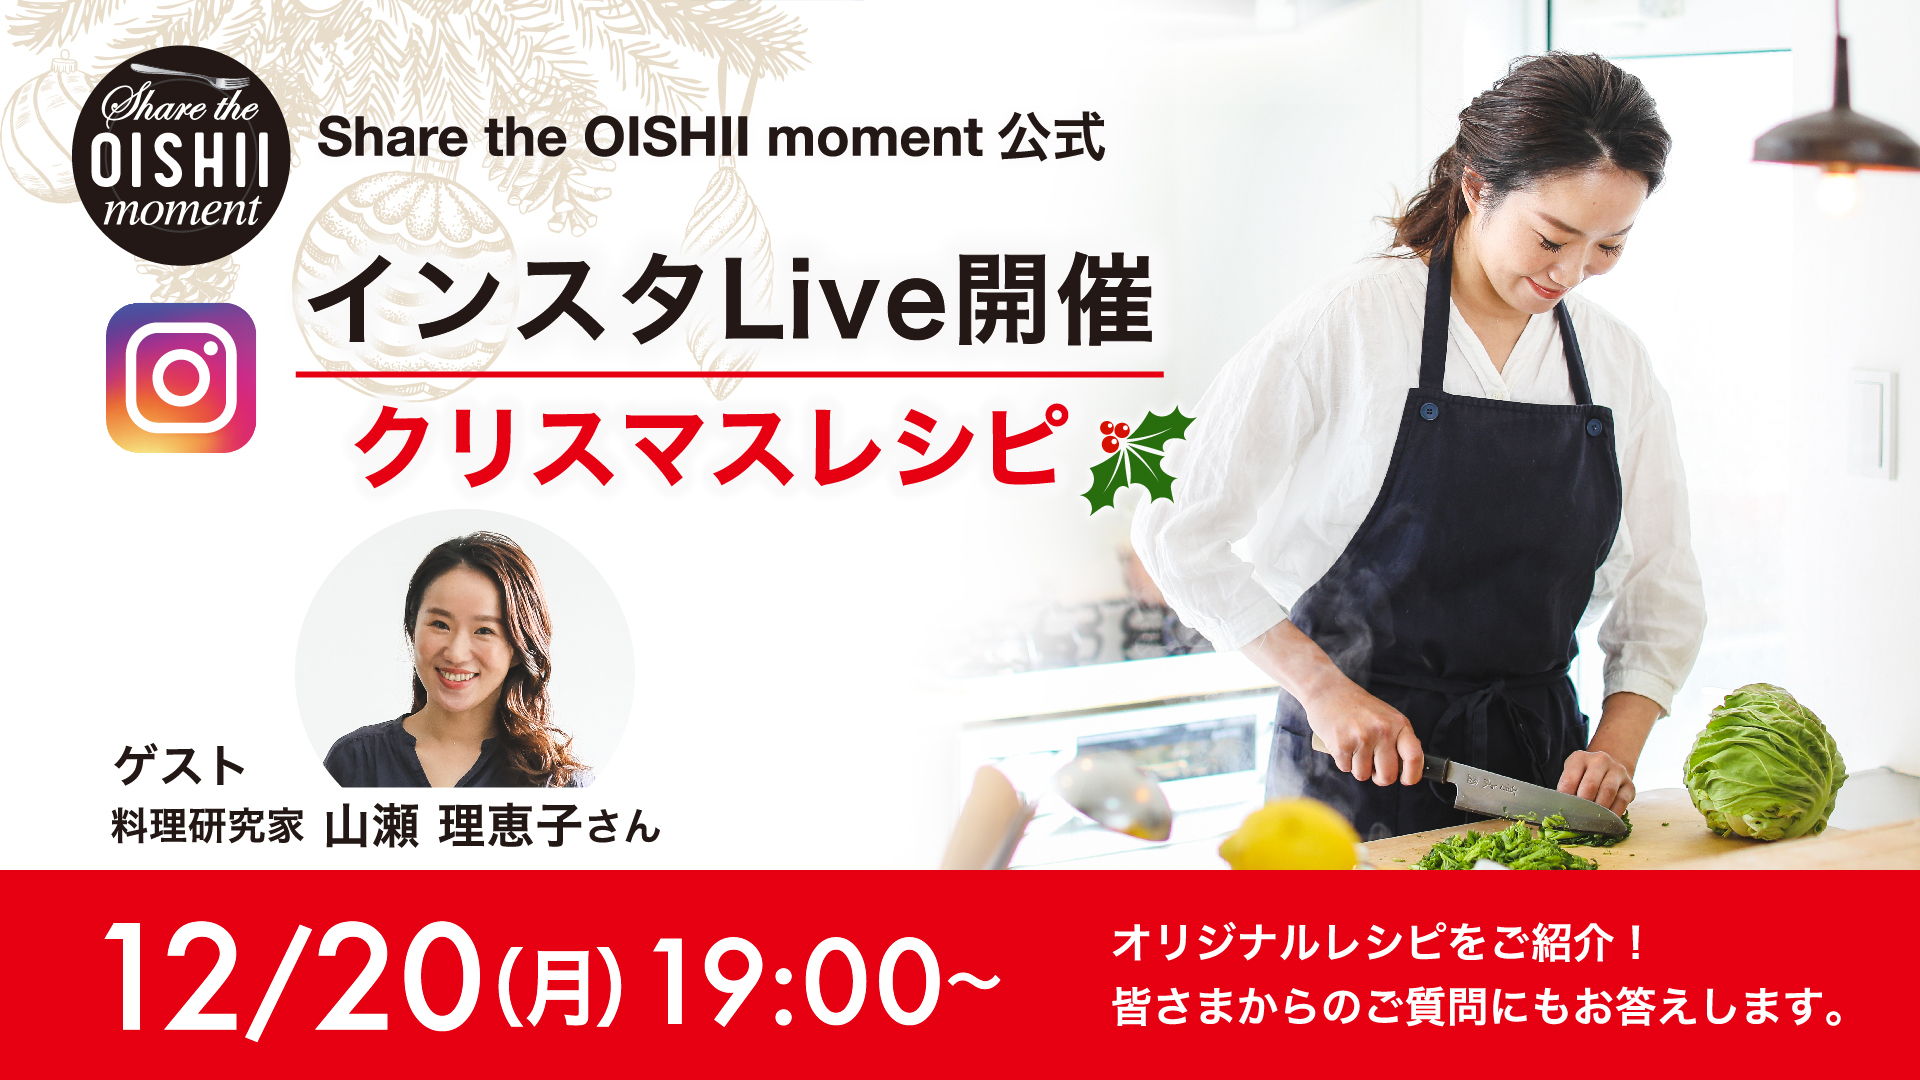 料理研究家 山瀬理恵子さん考案のスペシャルレシピで
今年のクリスマスを華やかに演出しよう！
「Share the OISHII Moment」インスタLive開催！